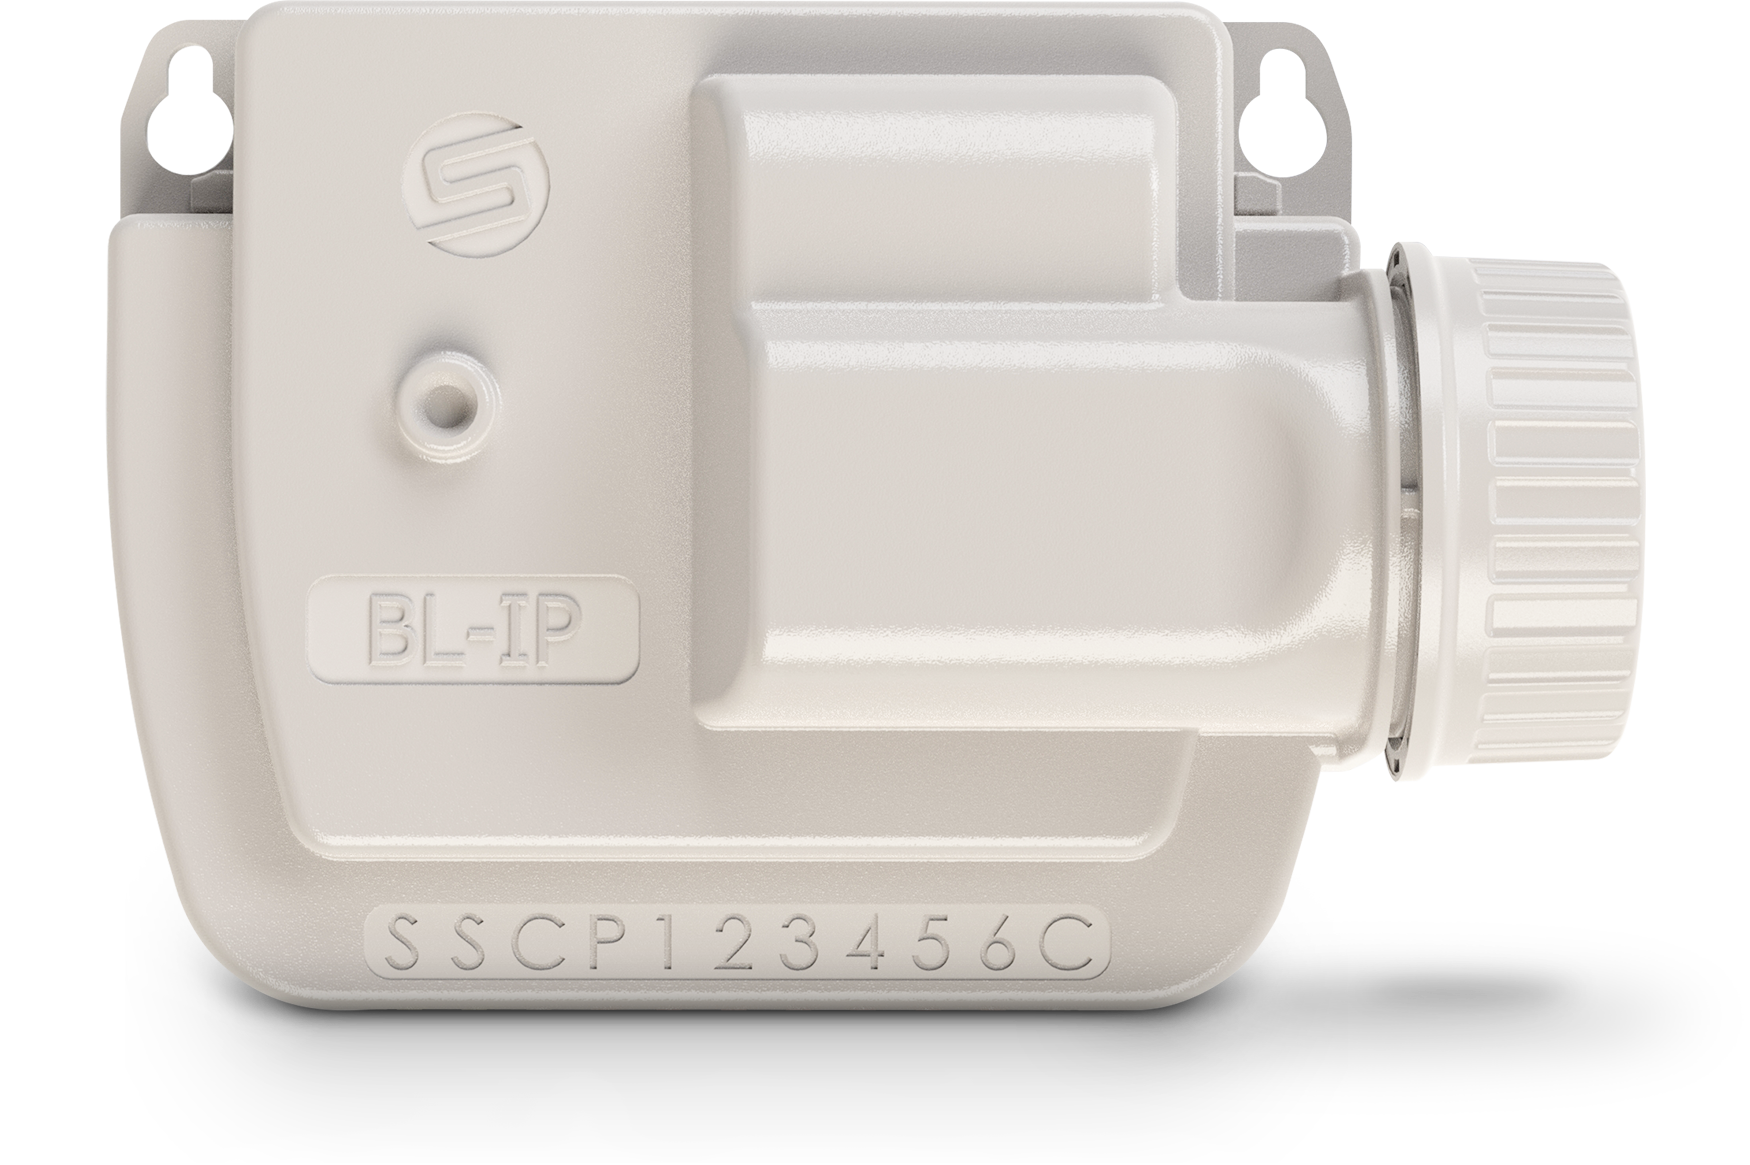 BL-IP - Bluetooth Pilli Kontrol Ünitesi